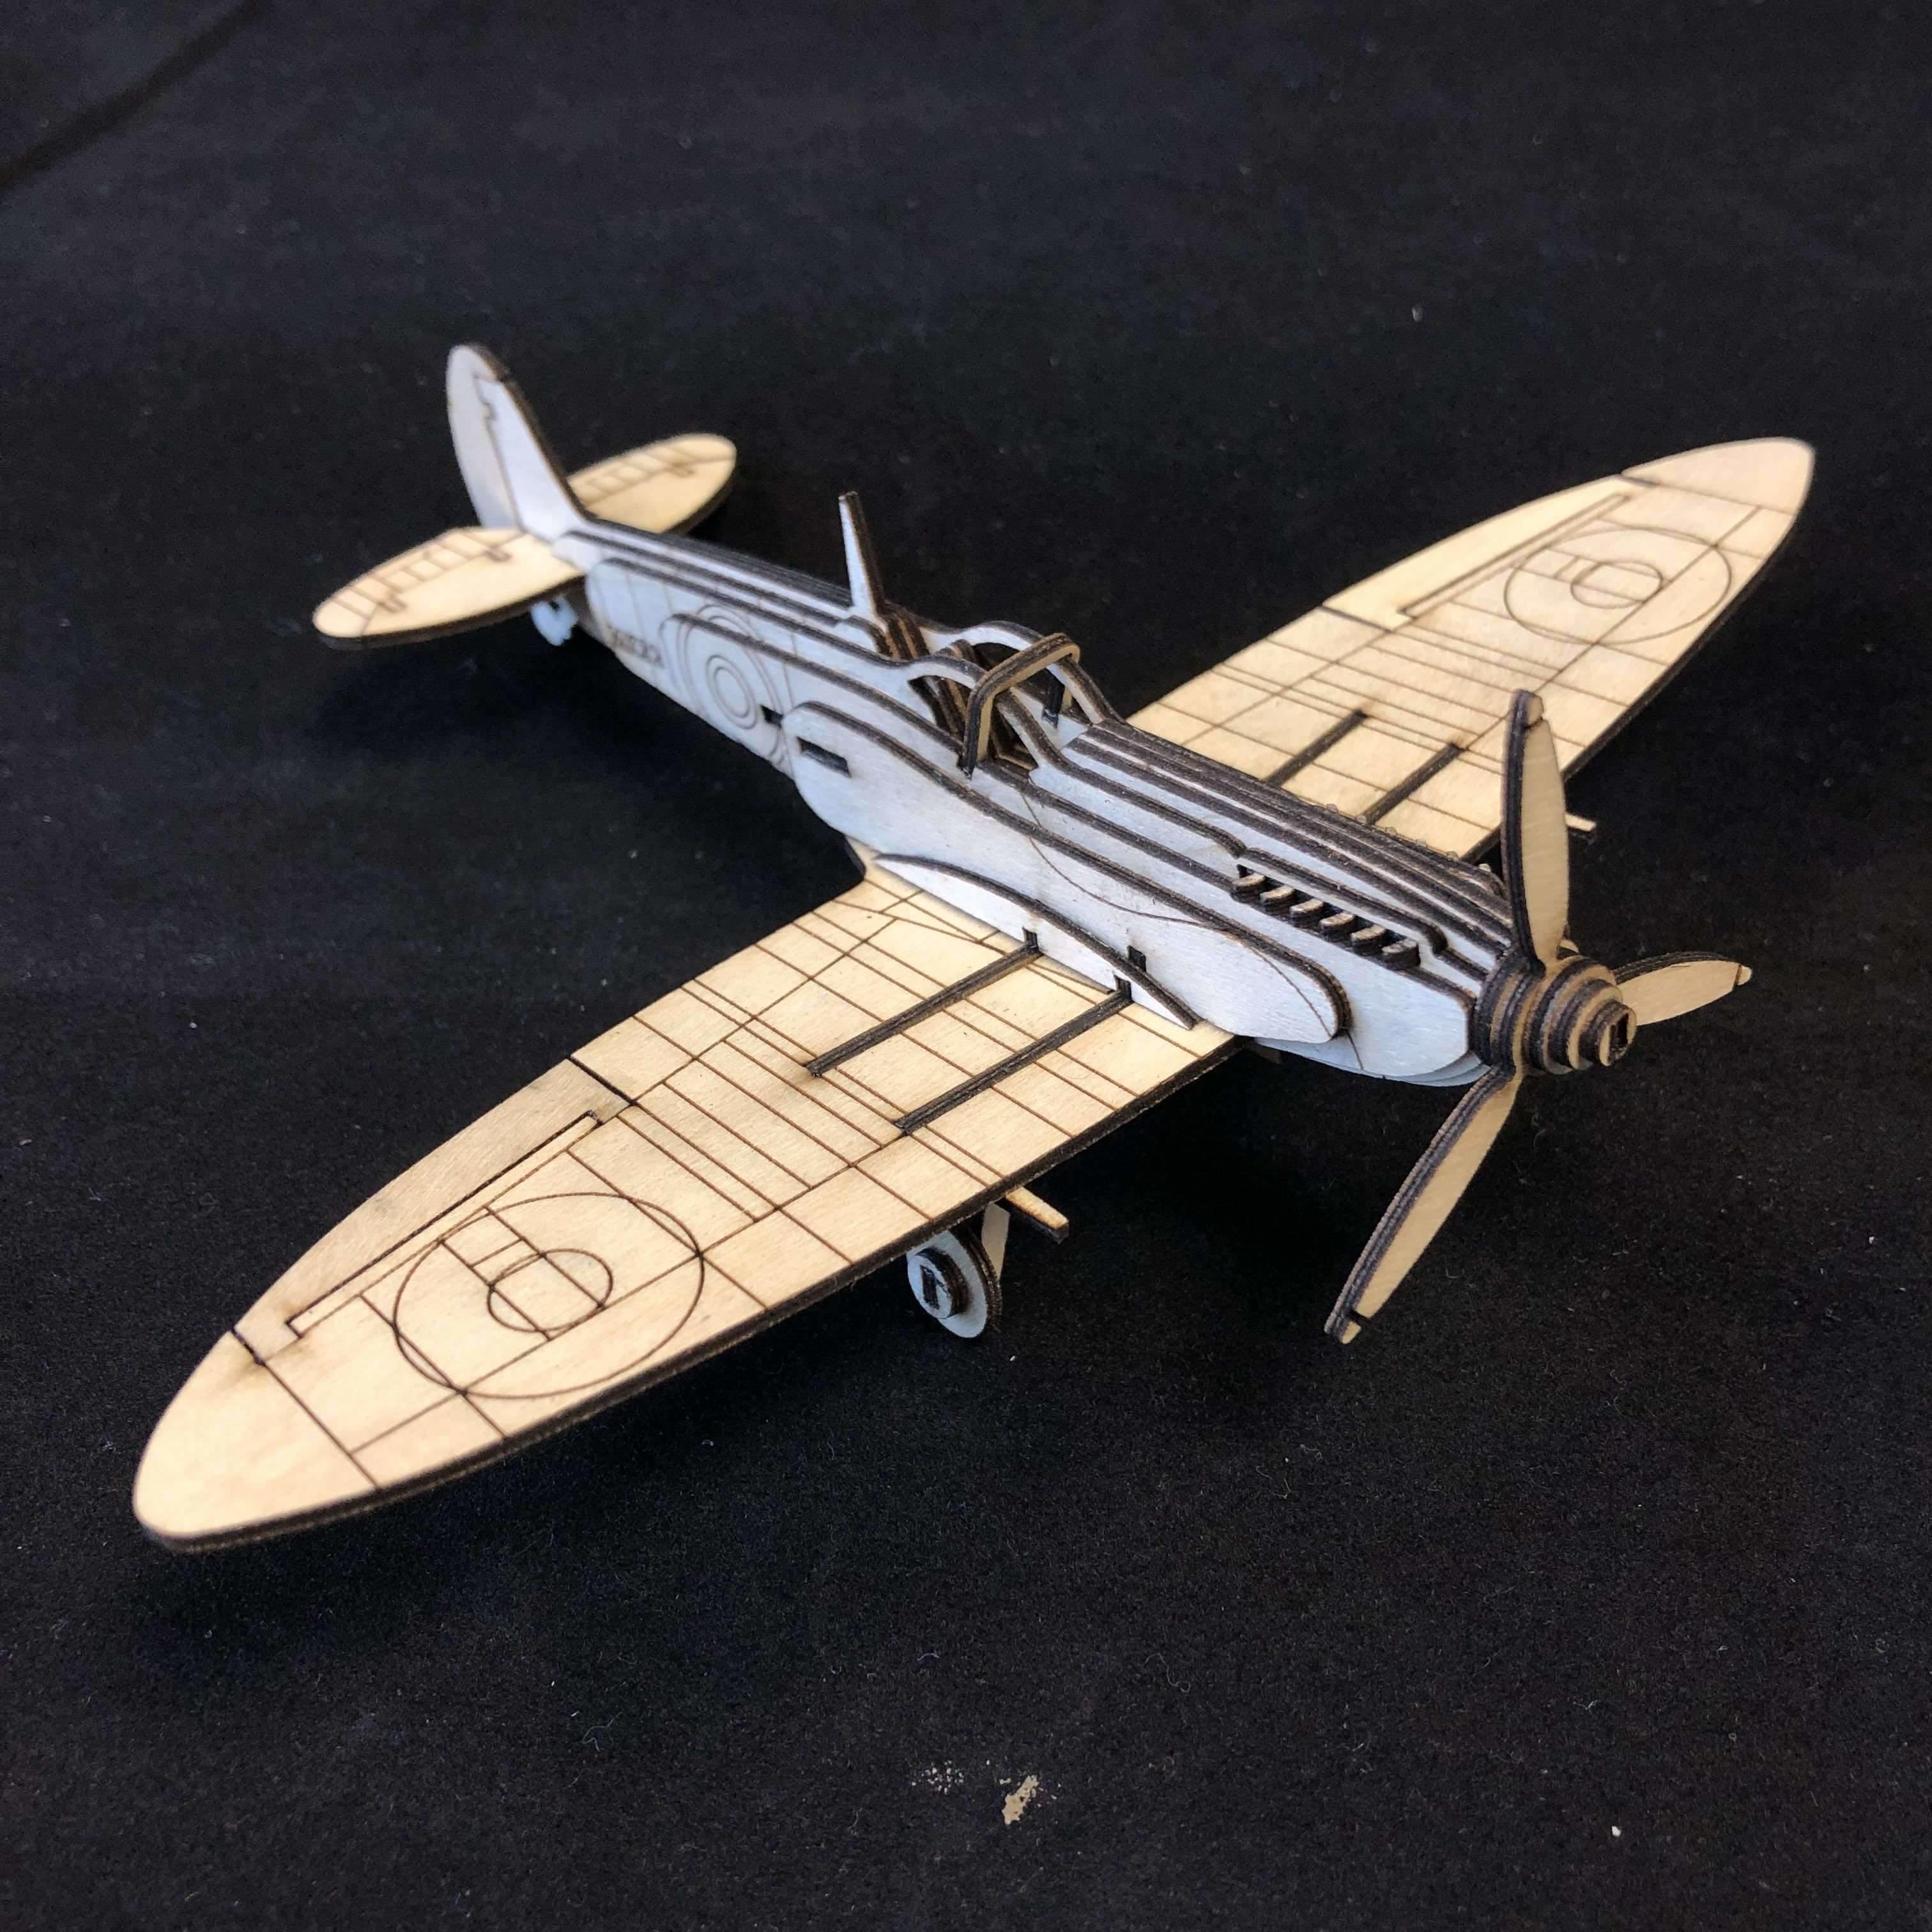 Red Berry Crafts Ltd:Supermarine Spitfire 3D Model Kit